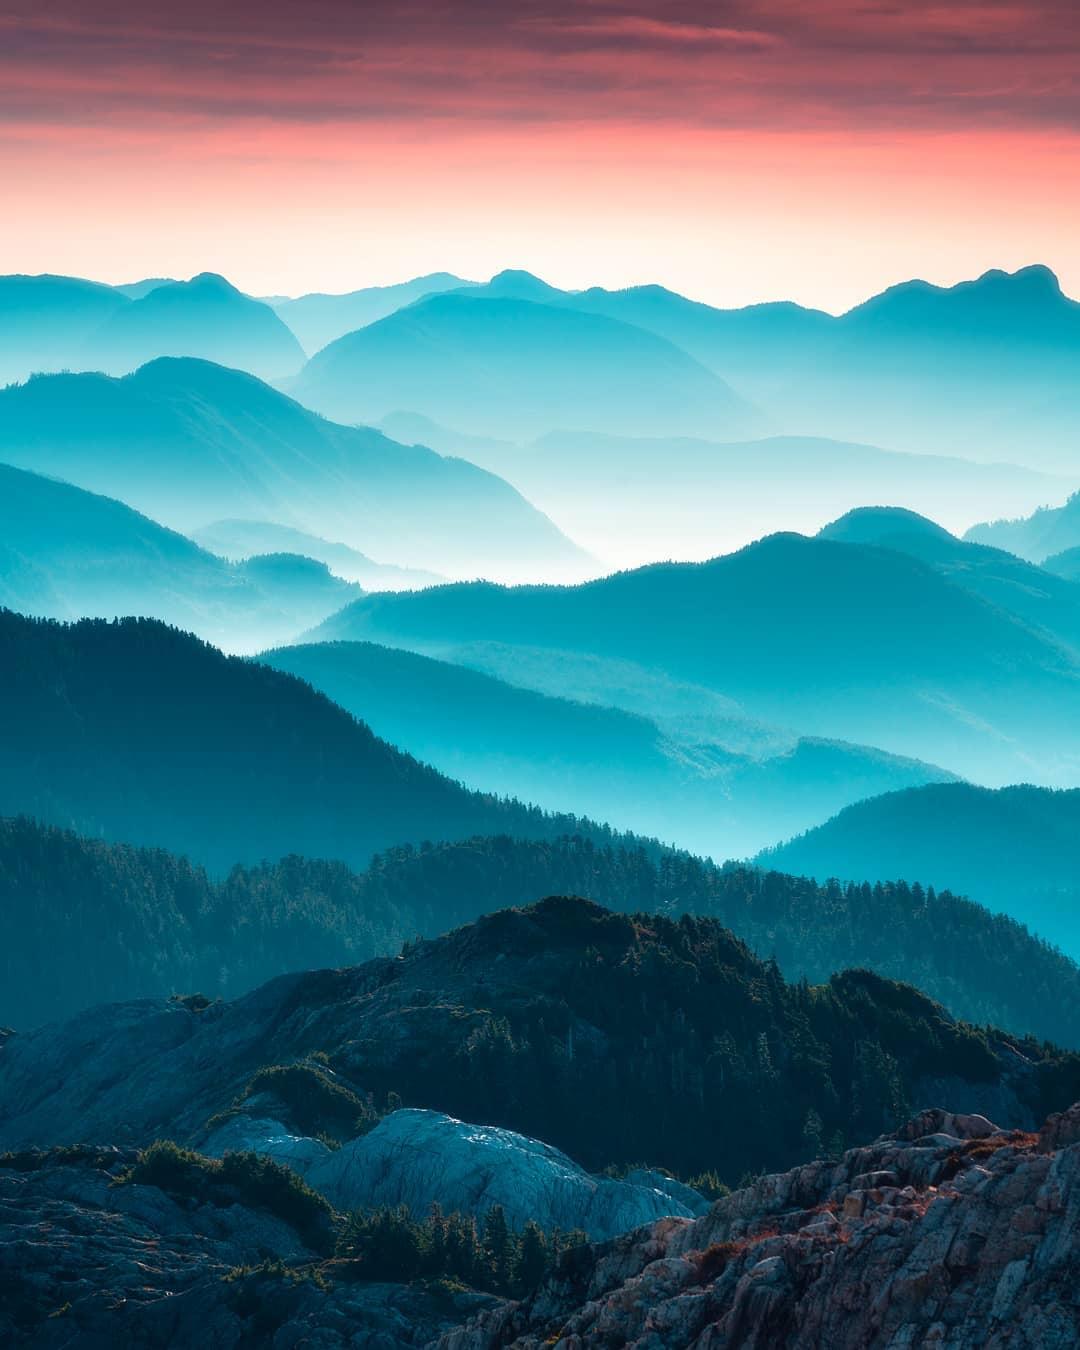  加拿大温哥华岛的山峦，来自摄影师Zach Doehler。 